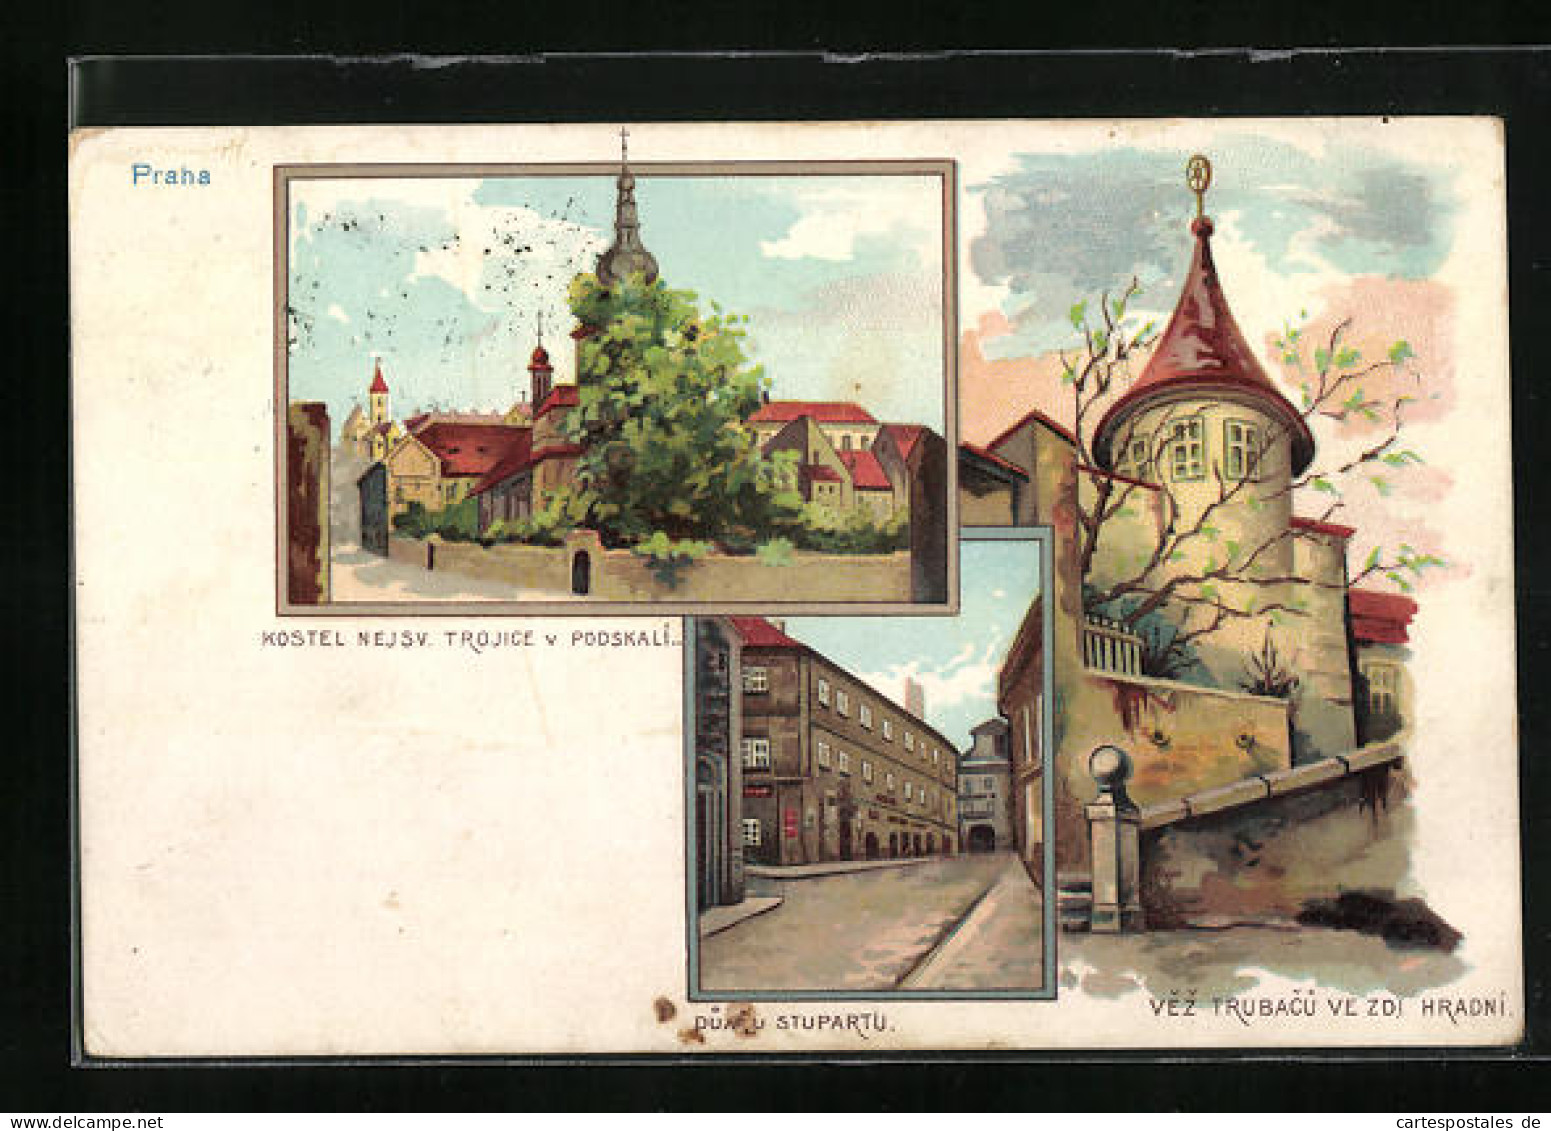 Lithographie Prag / Praha, Kostel Nejsv. Trojice V Podskali, Dumu Stupartu & Vez Trubacu  - República Checa